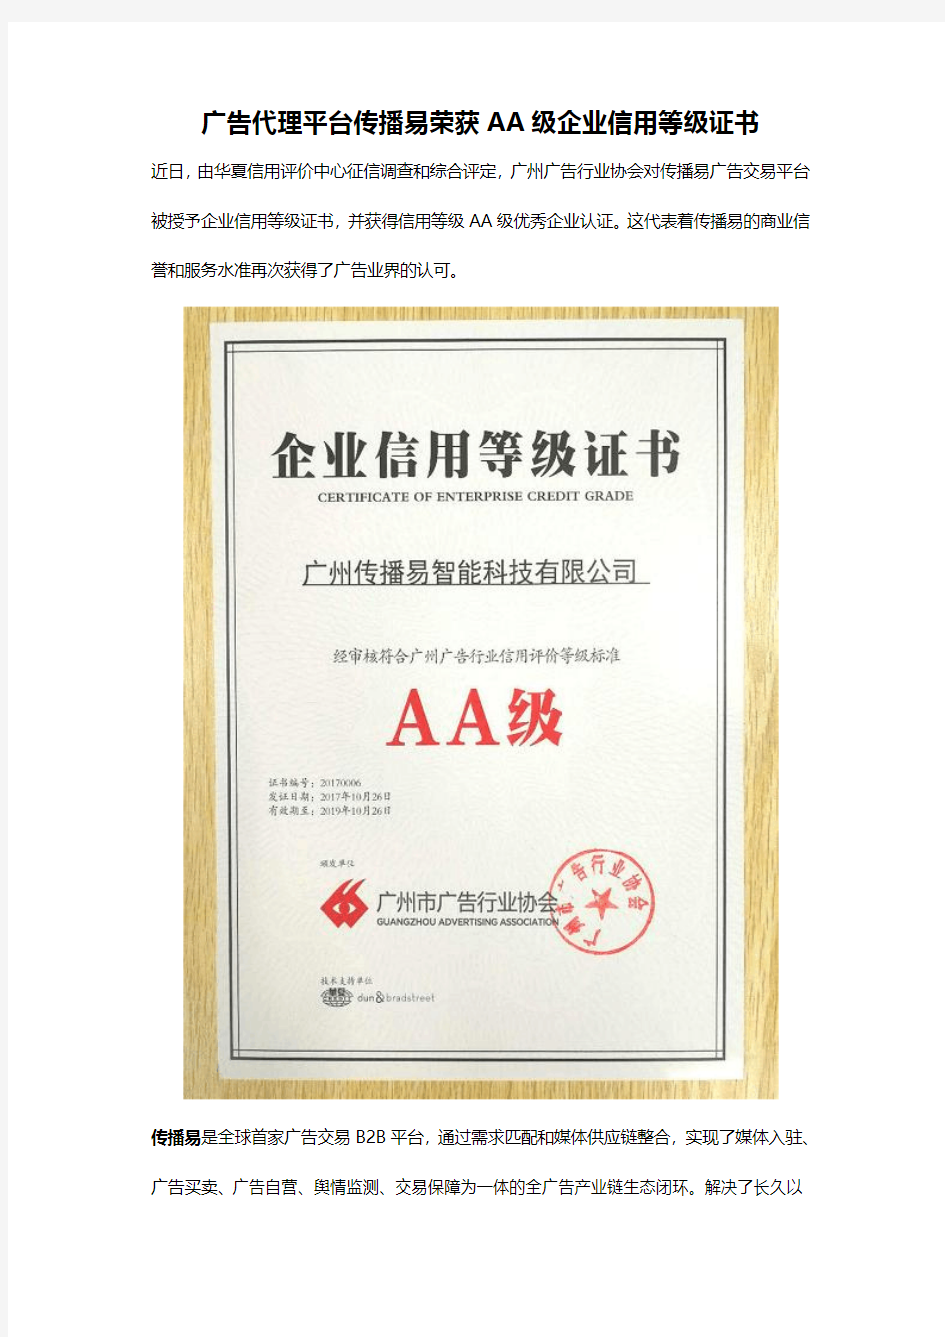 广告代理平台传播易荣获AA级企业信用等级证书